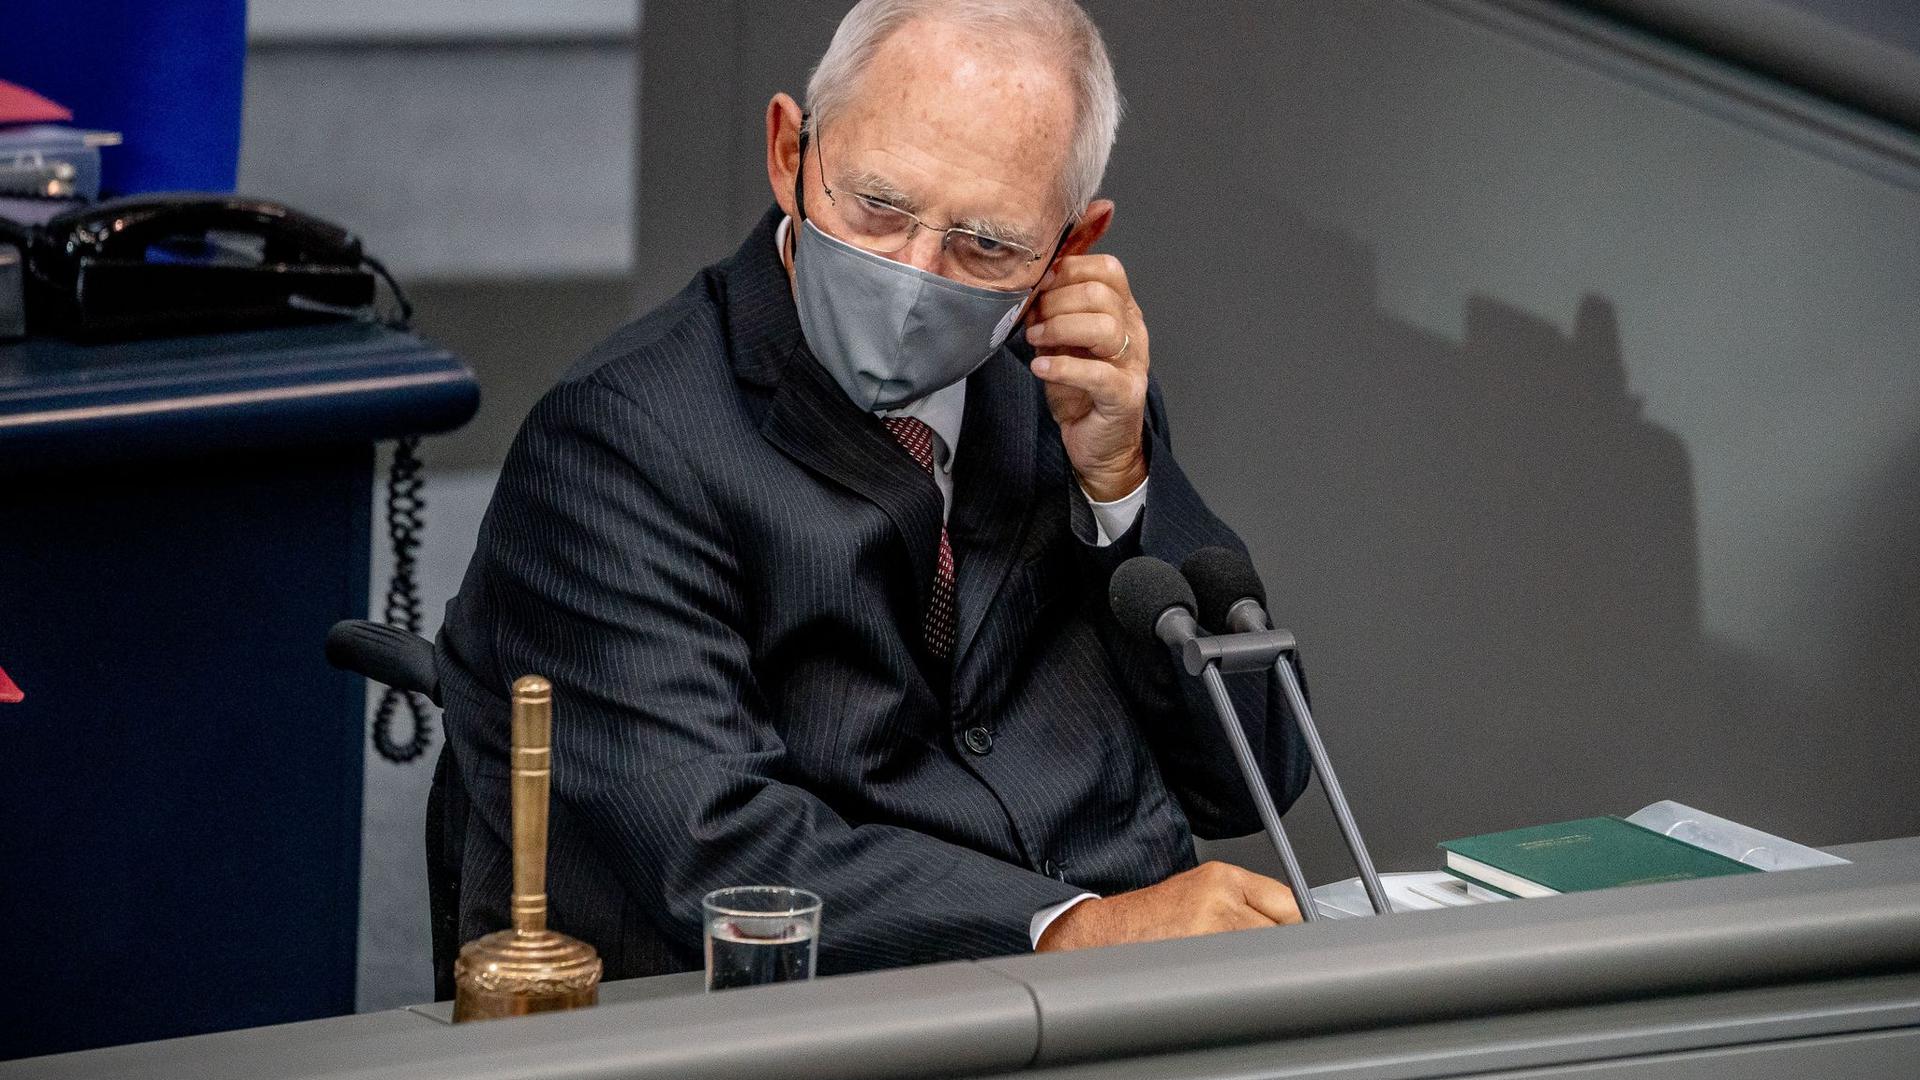 Bundestagspräsident Wolfgang Schäuble (CDU) hatte die Maskenpflicht vergangenen Herbst eingeführt.